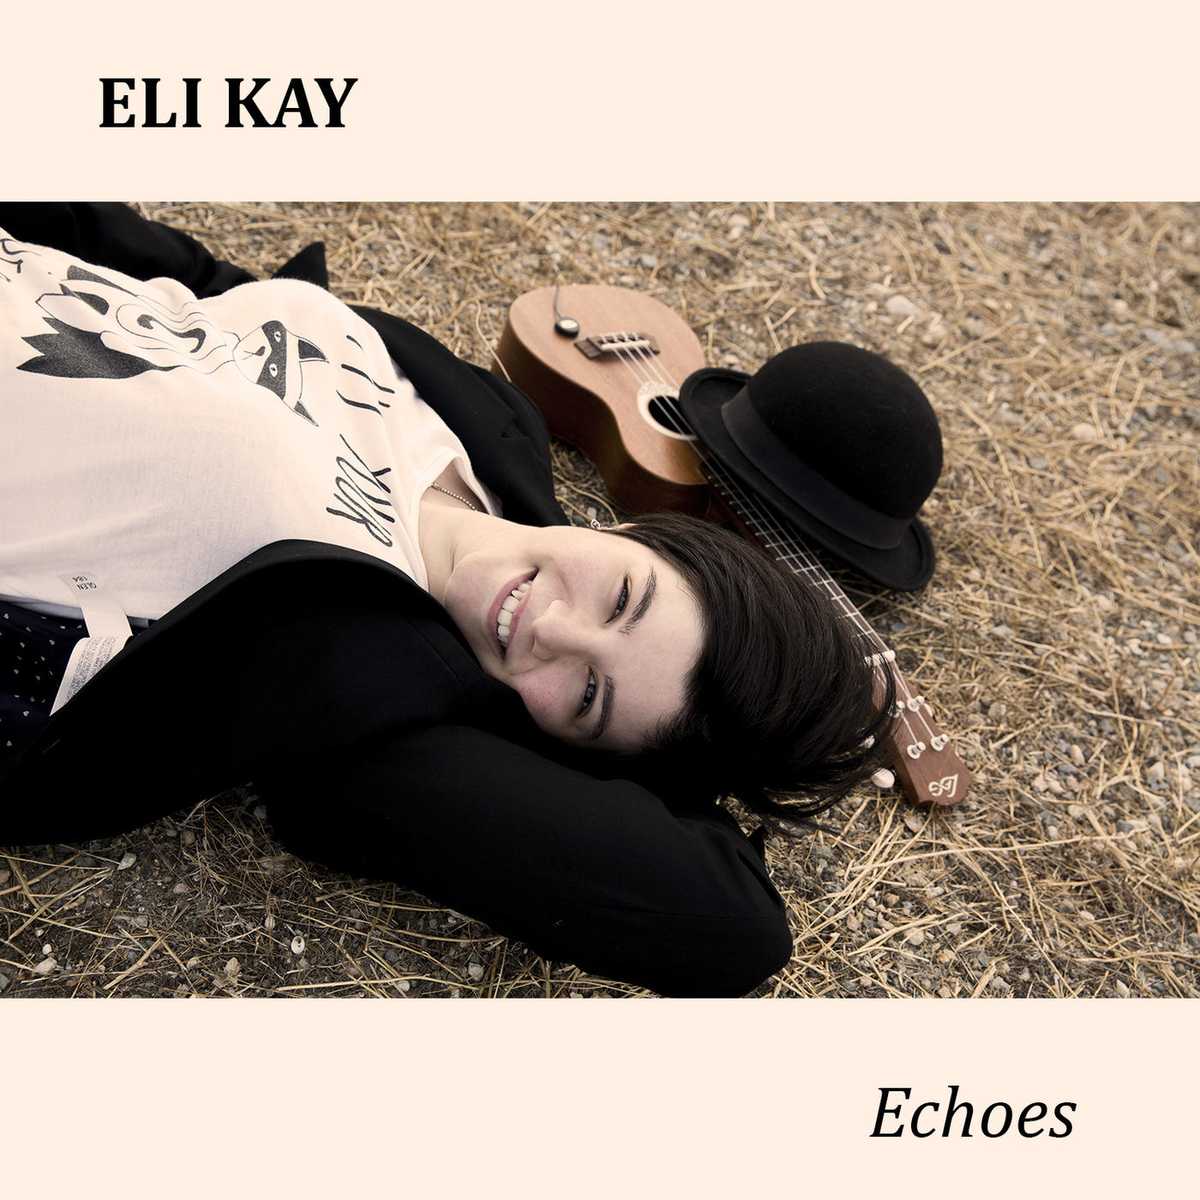 Eli Kay - Echoes